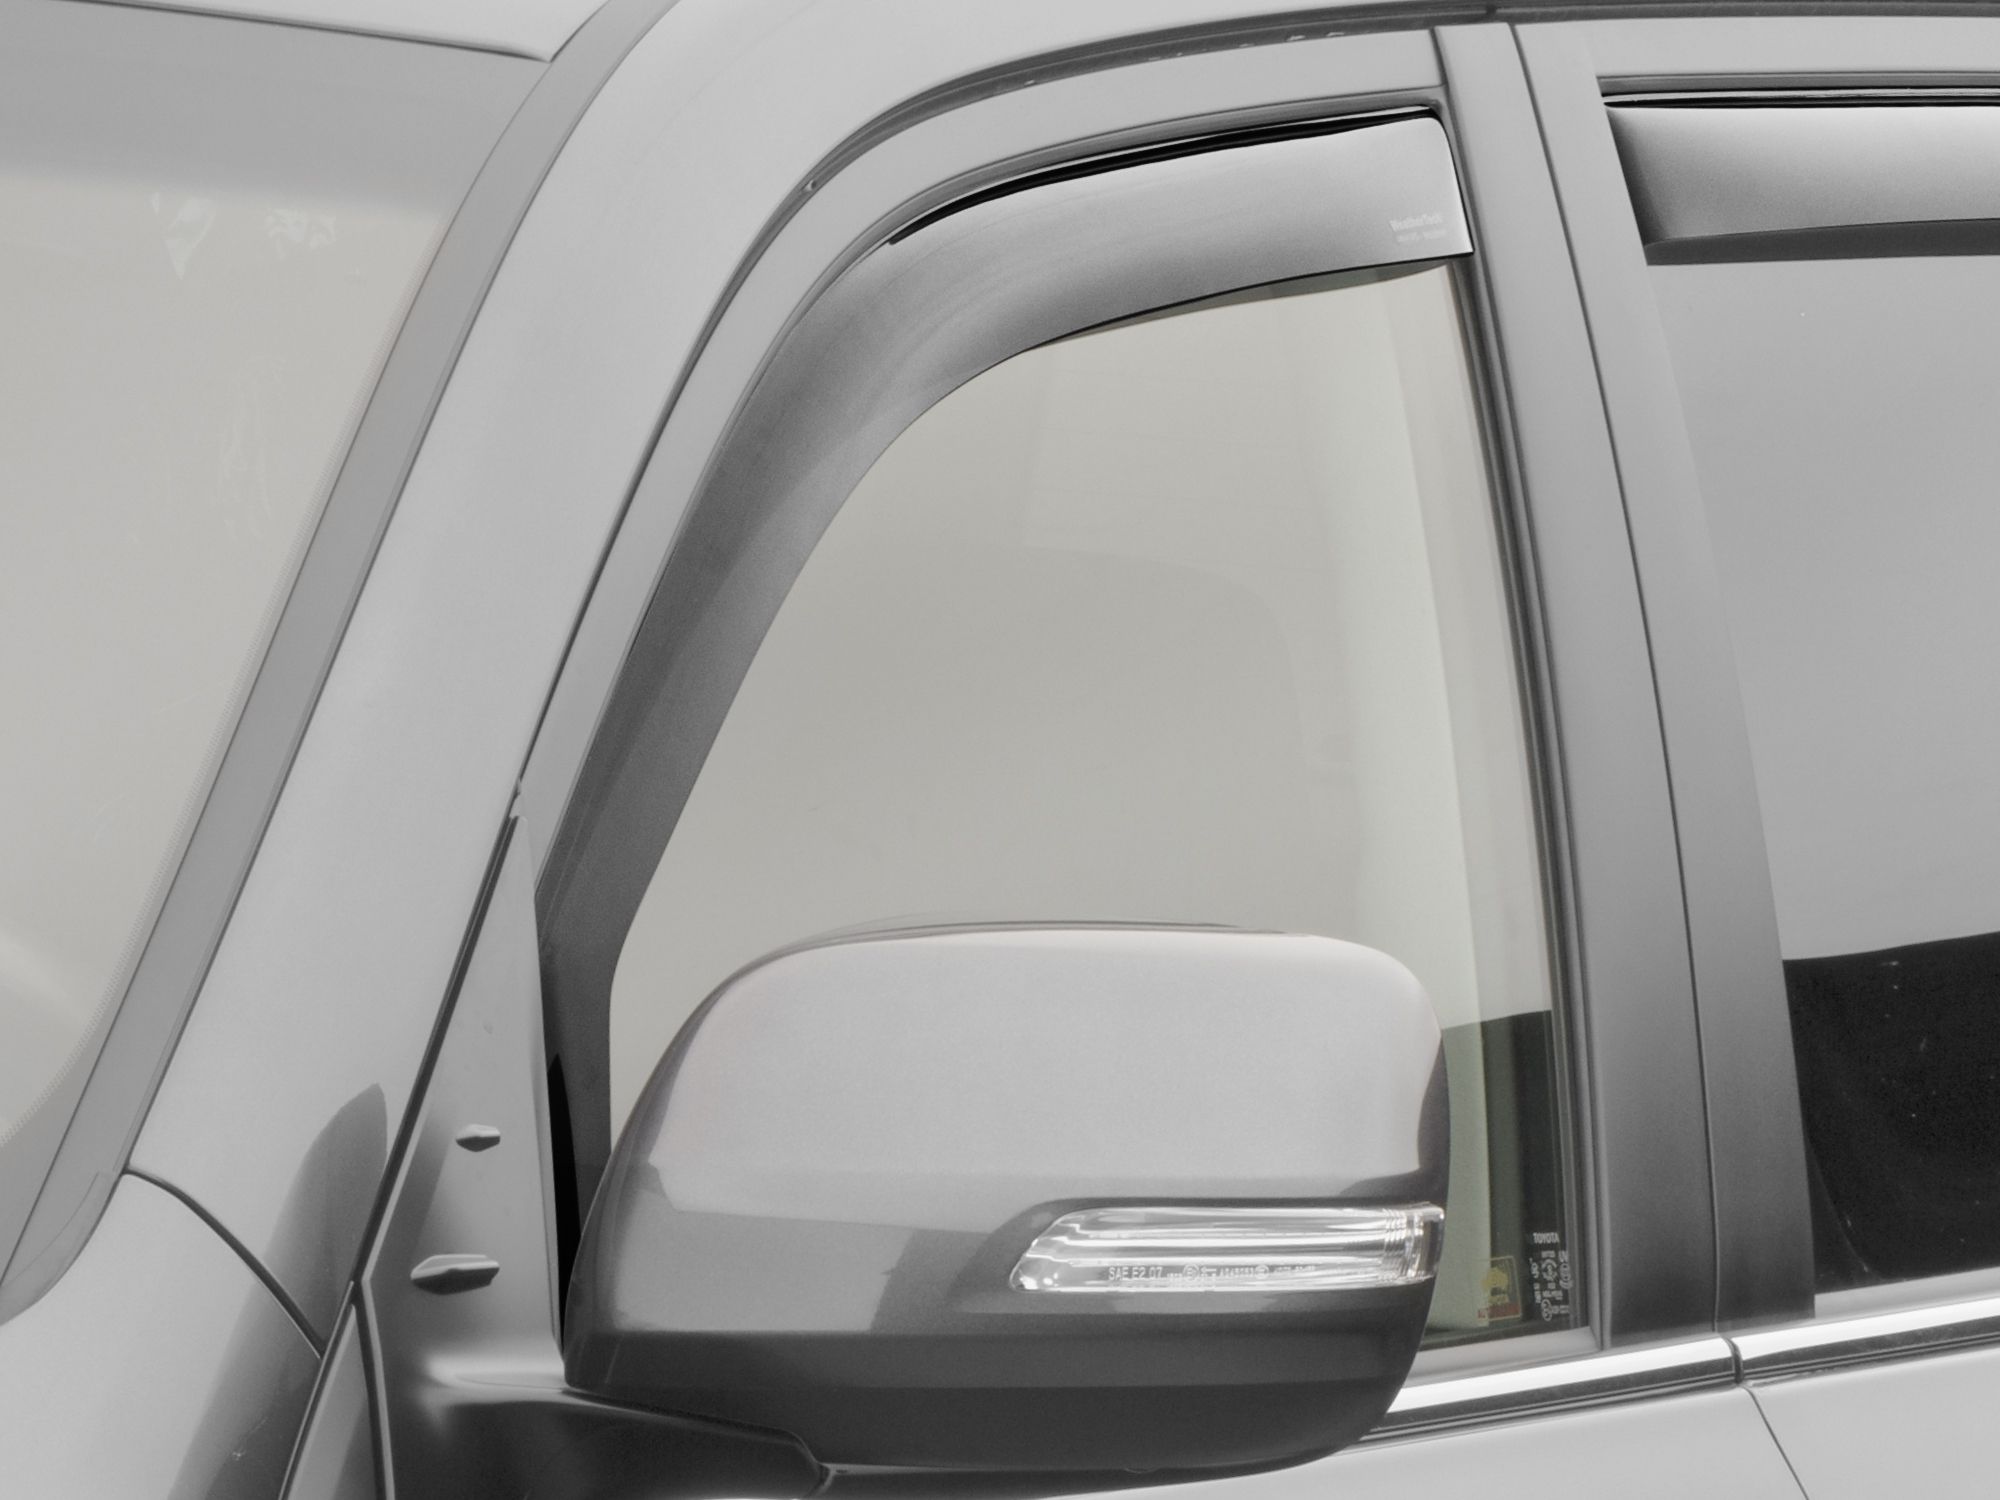 Déflecteurs de vent de vitres latérales pour Volkswagen Touareg